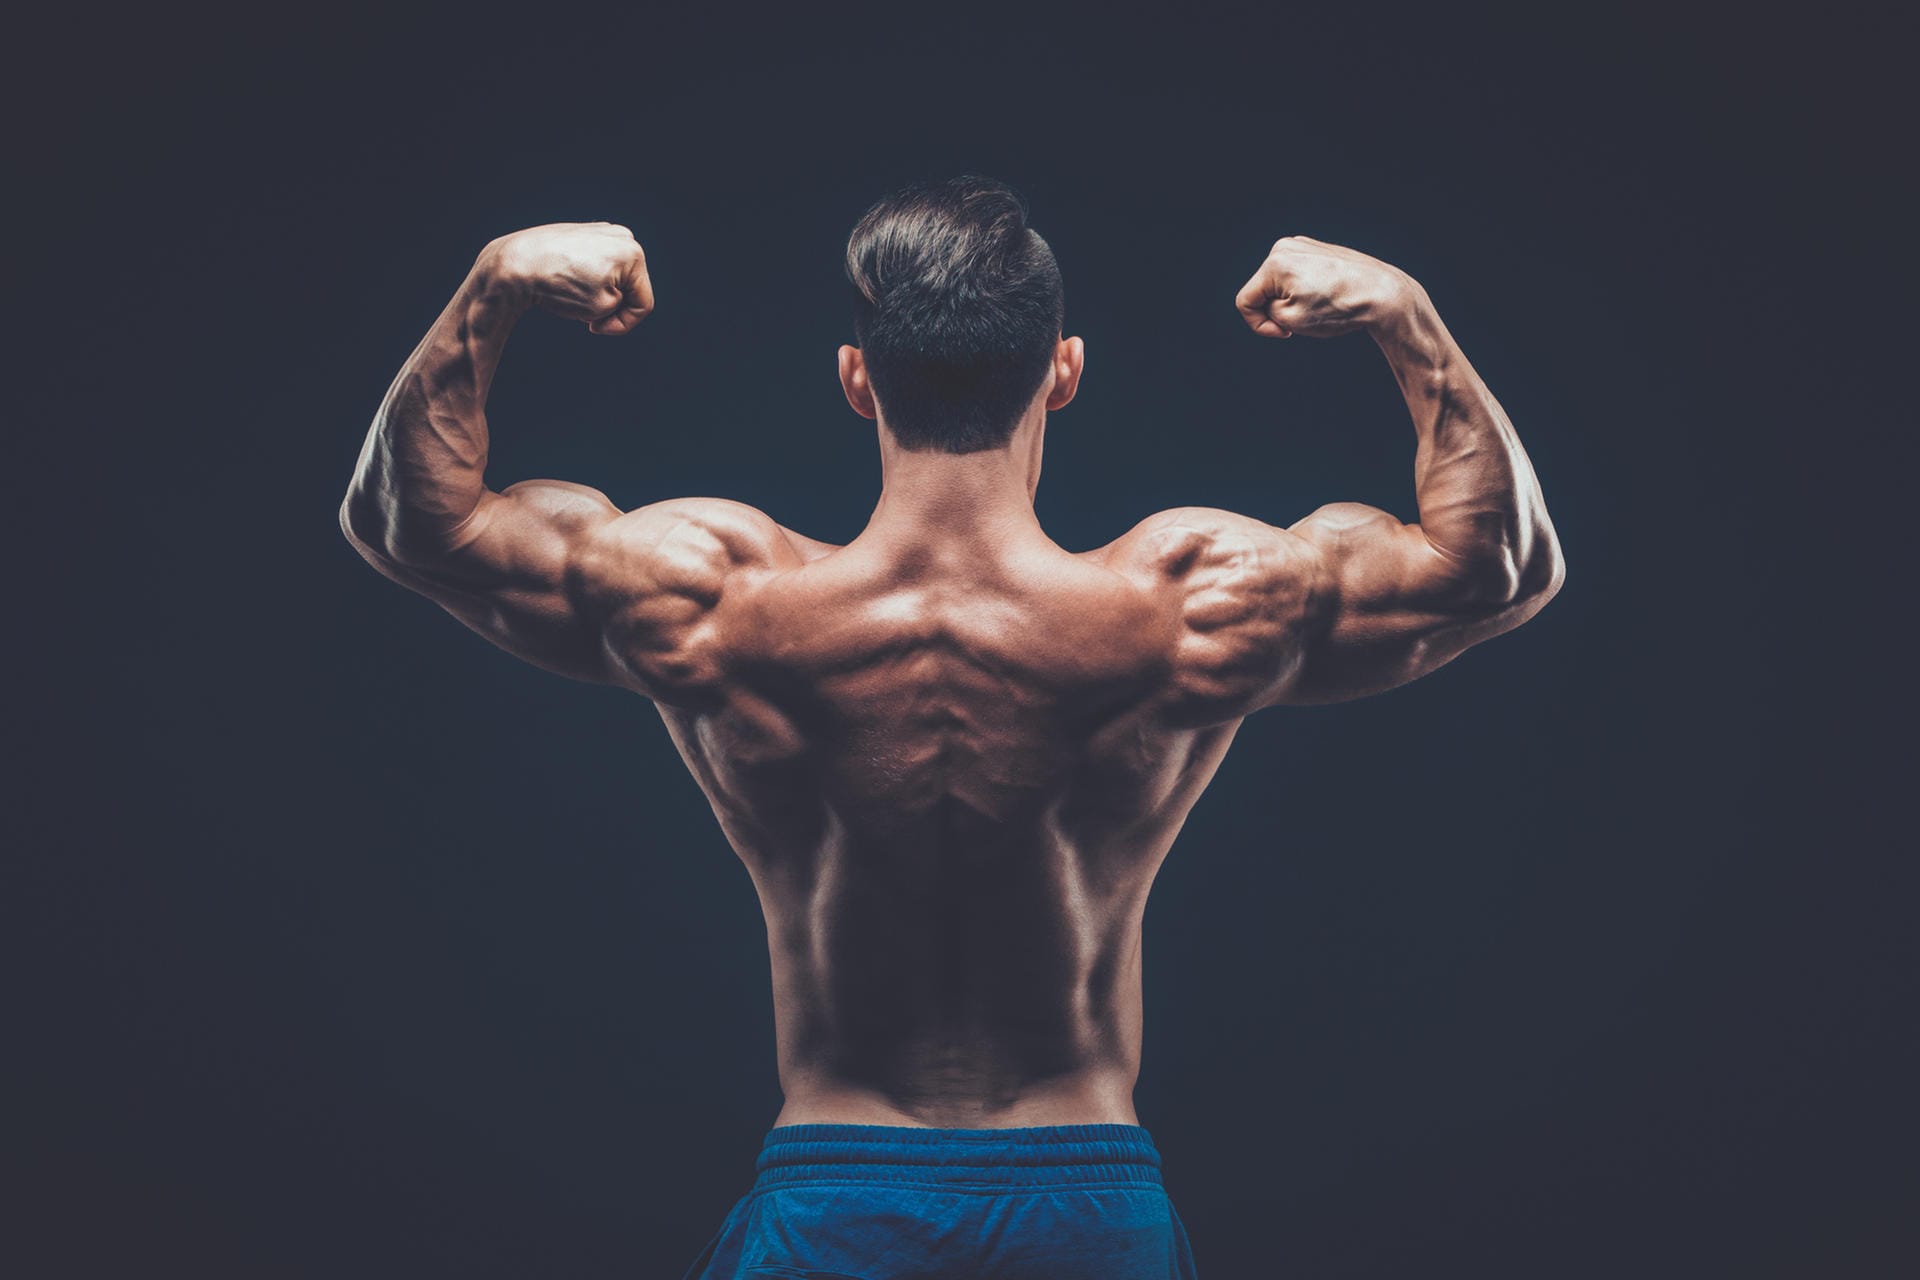 Viele wissen nicht, dass eigentlich der Trizeps der Muskel ist, der zwei Drittel des Armes ausmacht und der Bizeps nur ein Drittel zur Armmuskulatur beiträgt. Dazu trägt vielleicht die bekannte Pose "Double Biceps" bei.